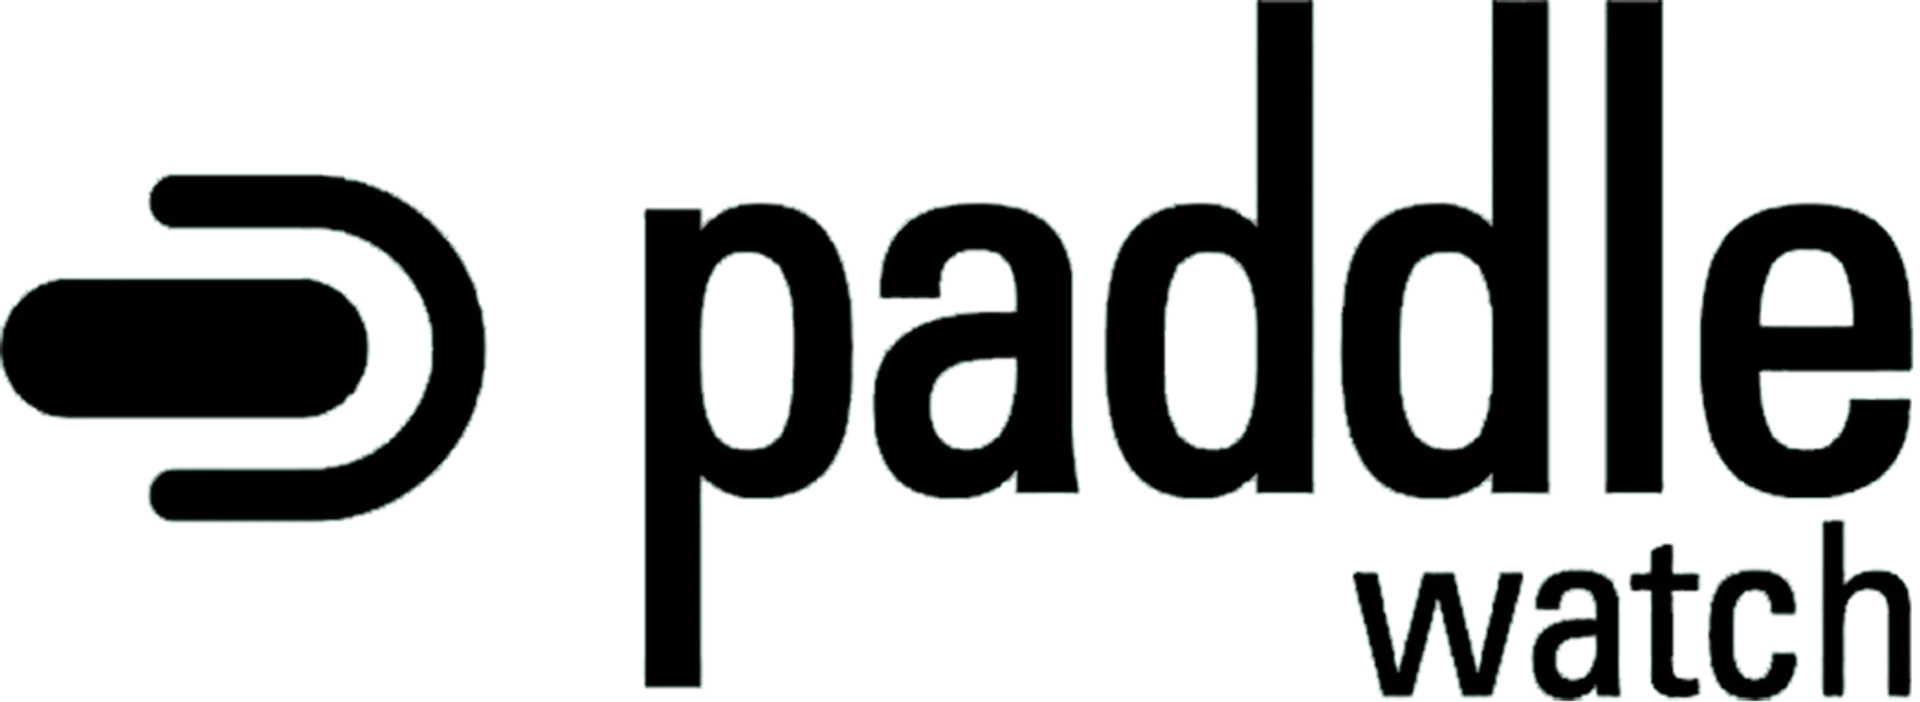 PADDLE WATCH logo